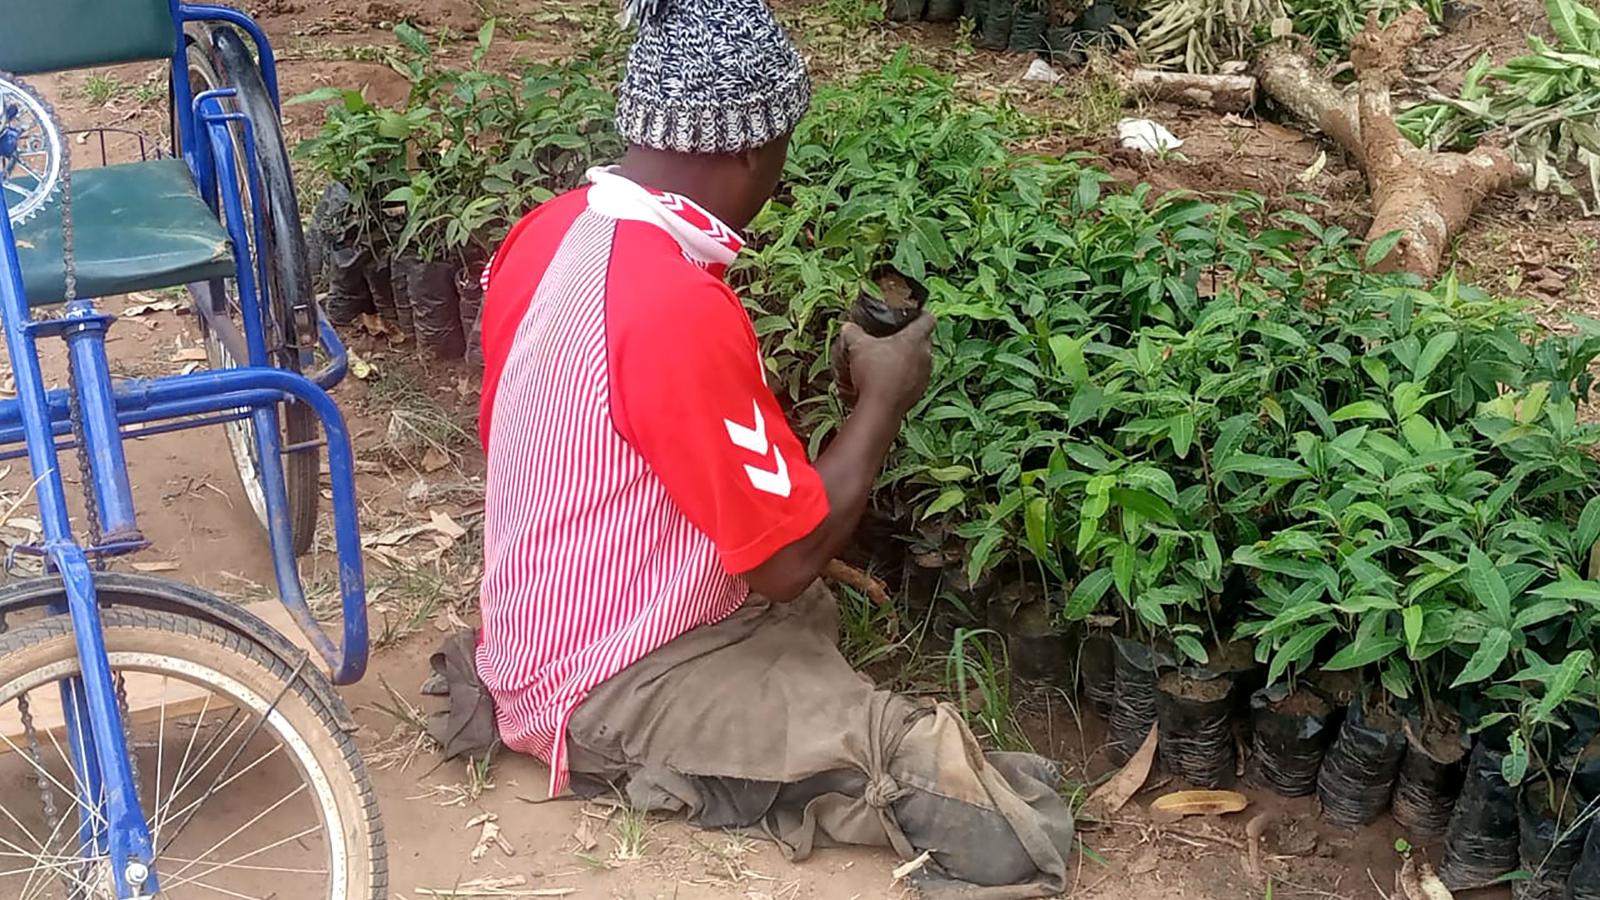 Richard Munyao, Kenya, sitter på marken och arbetar med sina trädplantor. Bredvid honom står hans rullstol.